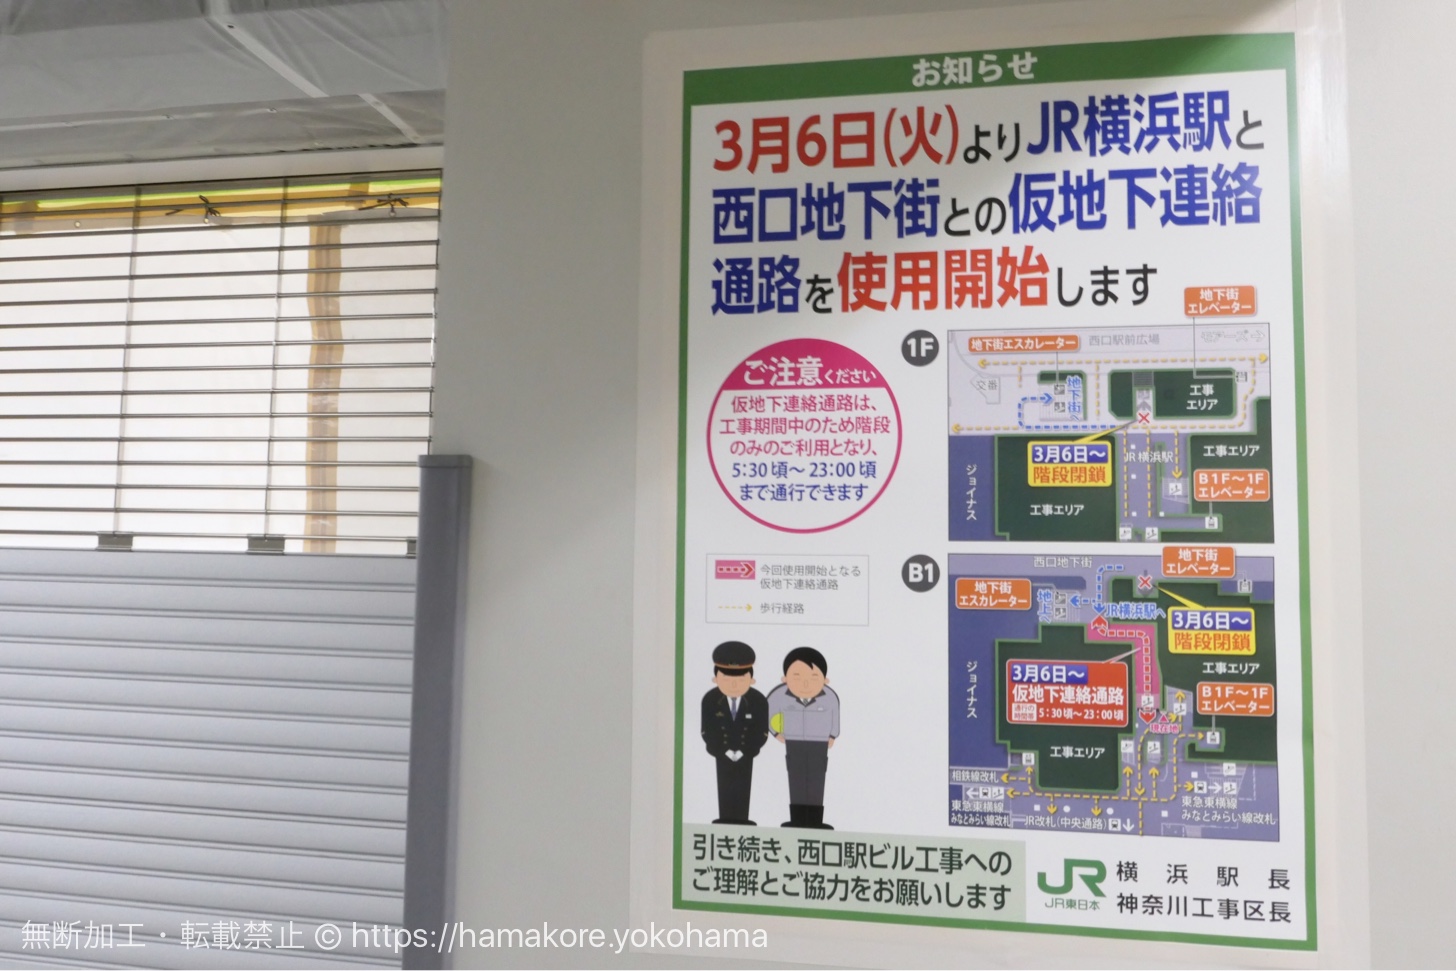 横浜駅西口 中央自由通路とジョイナス地下街を繋ぐ仮通路が3月6日開通！